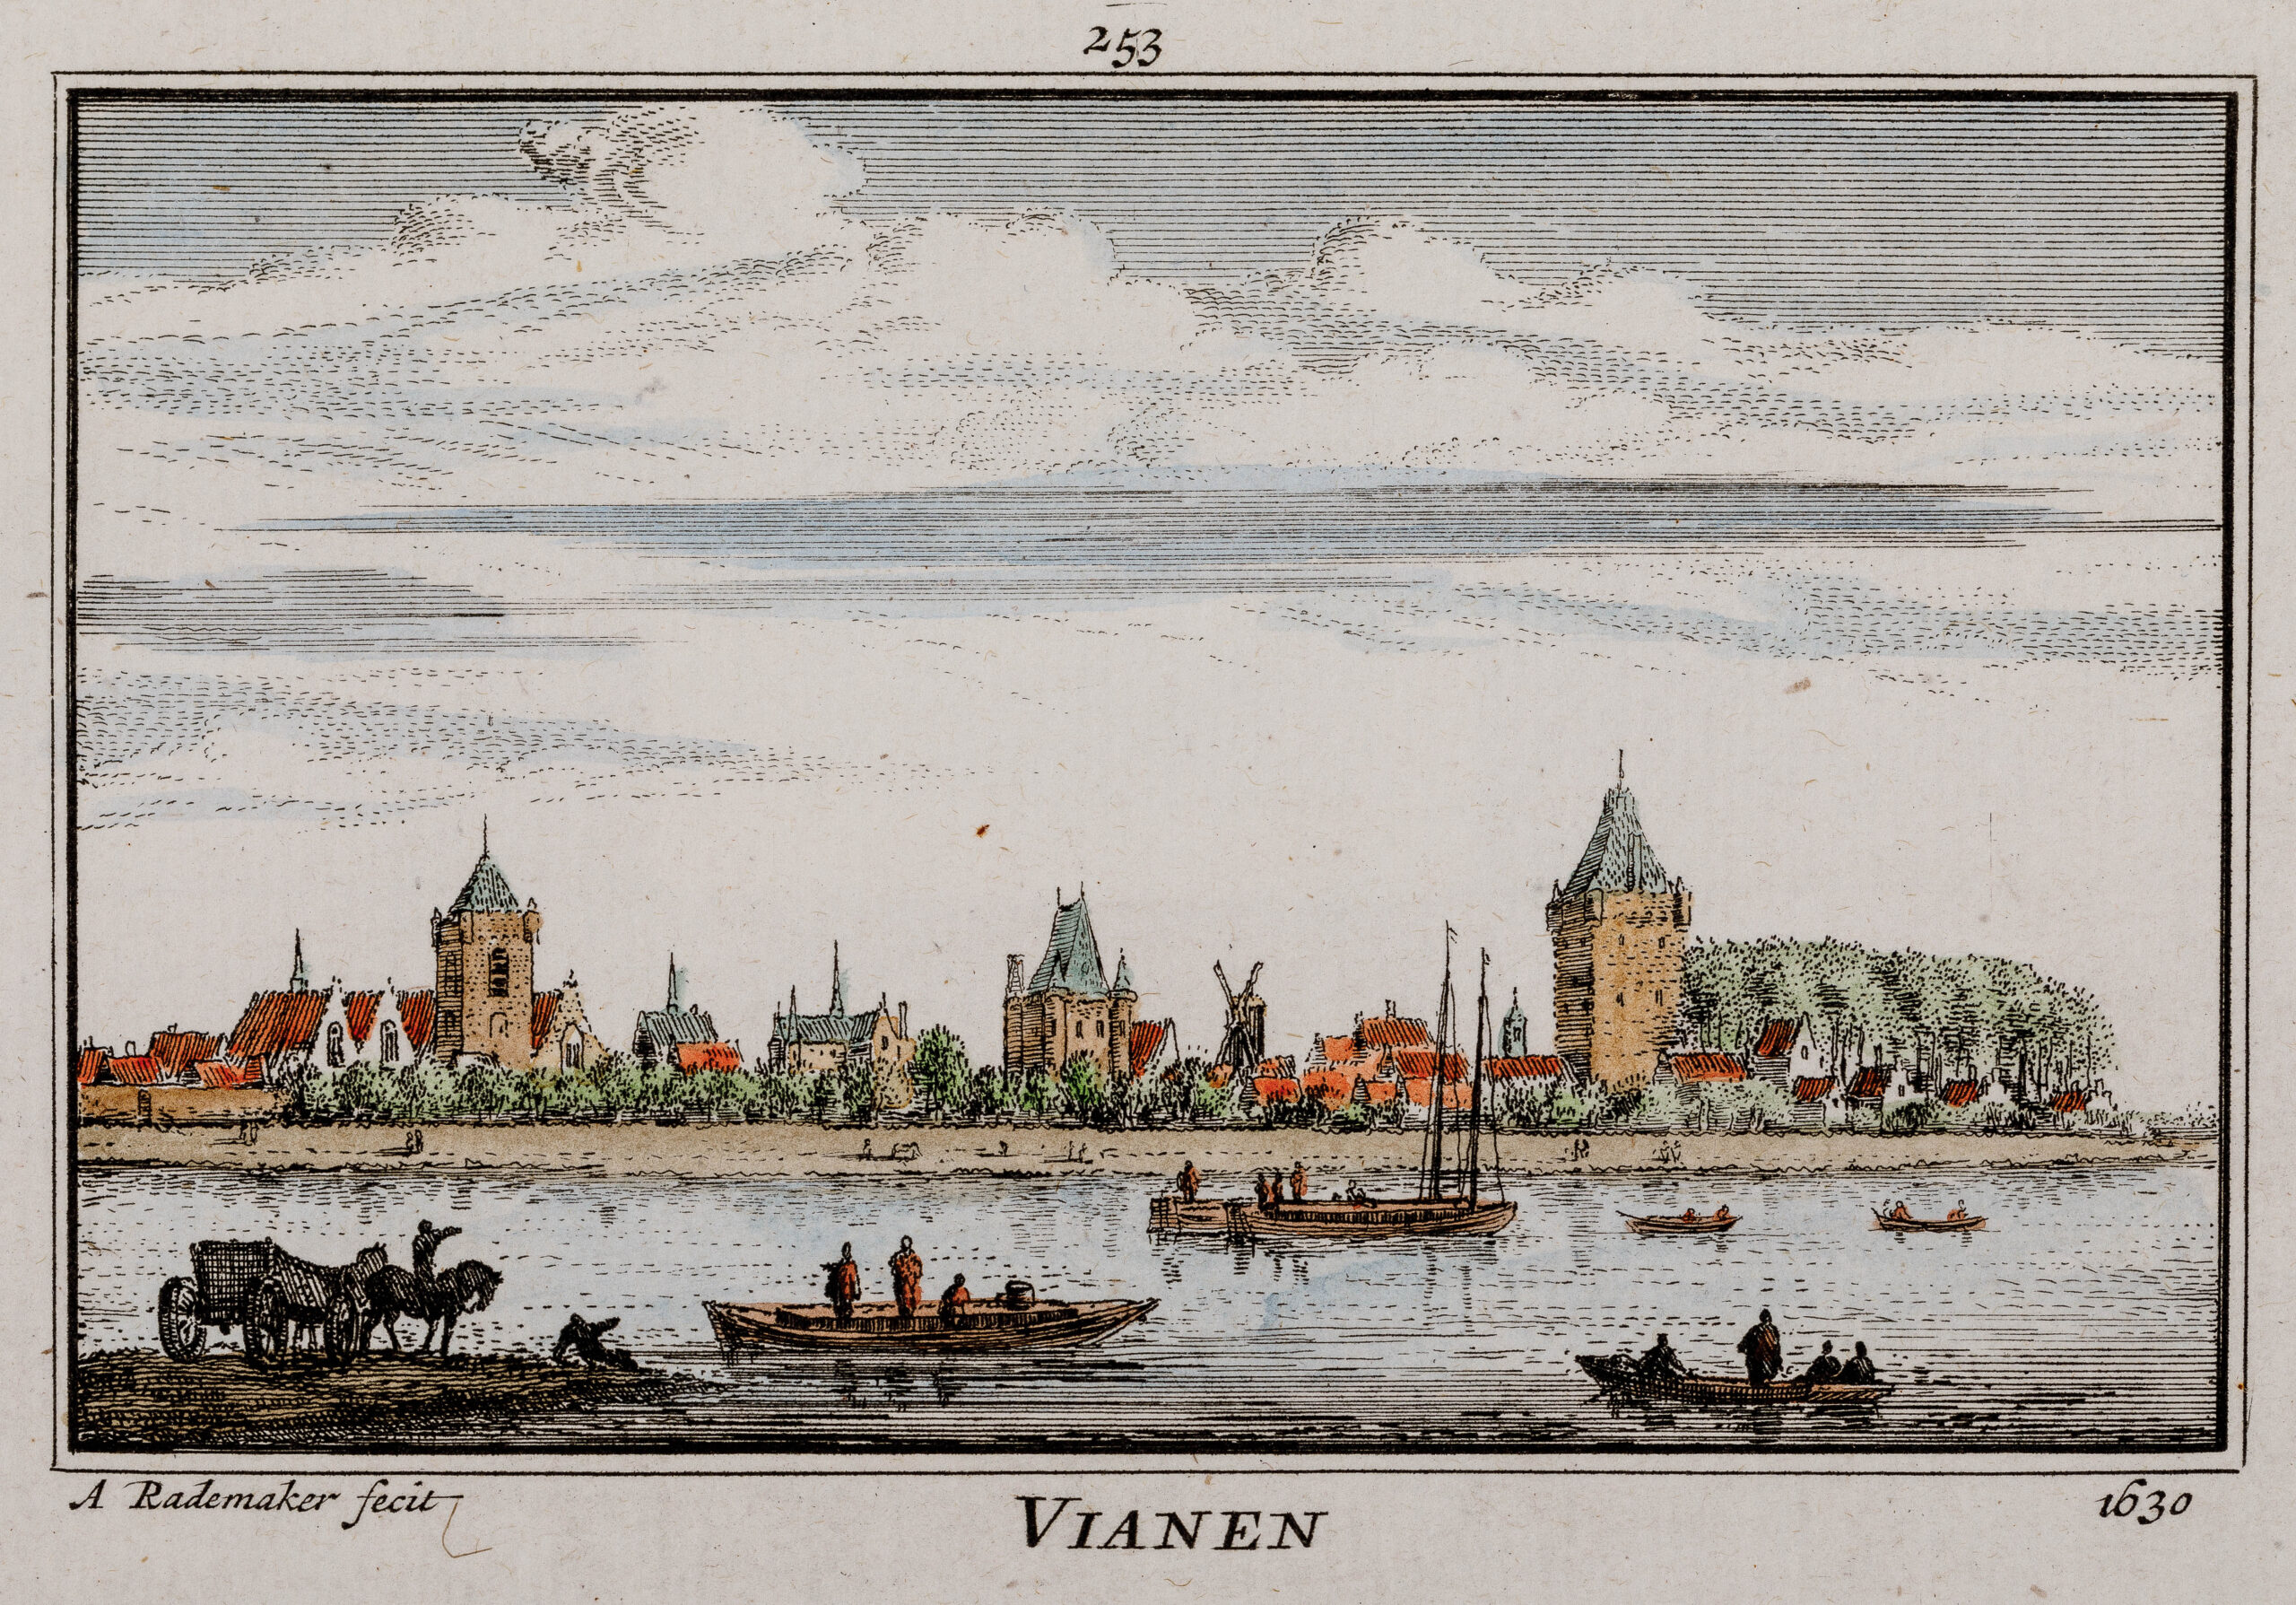 Gezicht over de Lek, met enkele vaartuigen waaronder een varende veerpont, op de stad Vianen met rechts de toren van huis Batestein naar de situatie van 1630. Barcode nr: 090176